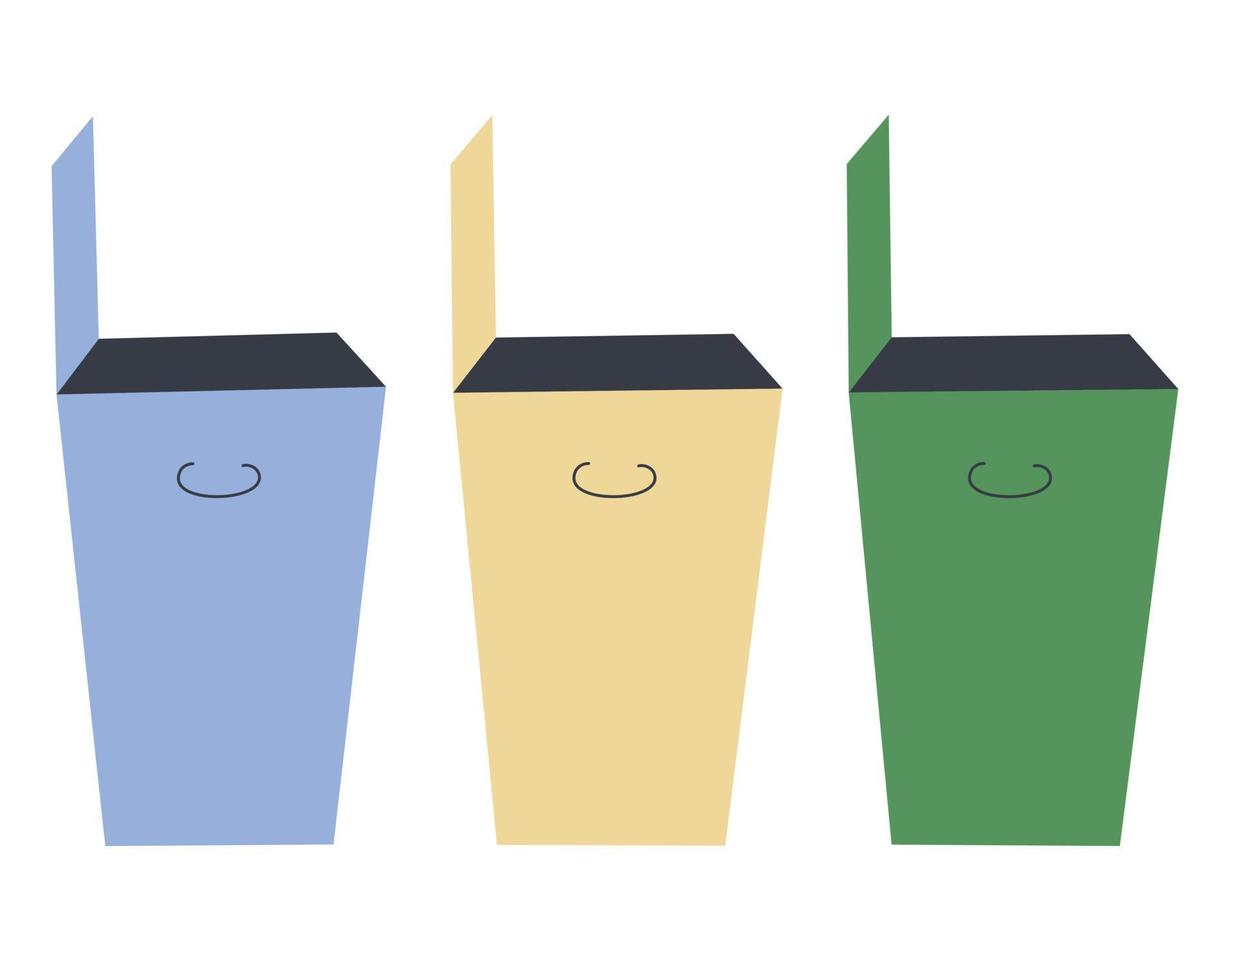 três latas de lixo em azul, amarelo e verde. o conceito de coleta seletiva de resíduos, cuidado com a natureza, reciclagem. ilustração vetorial. vetor